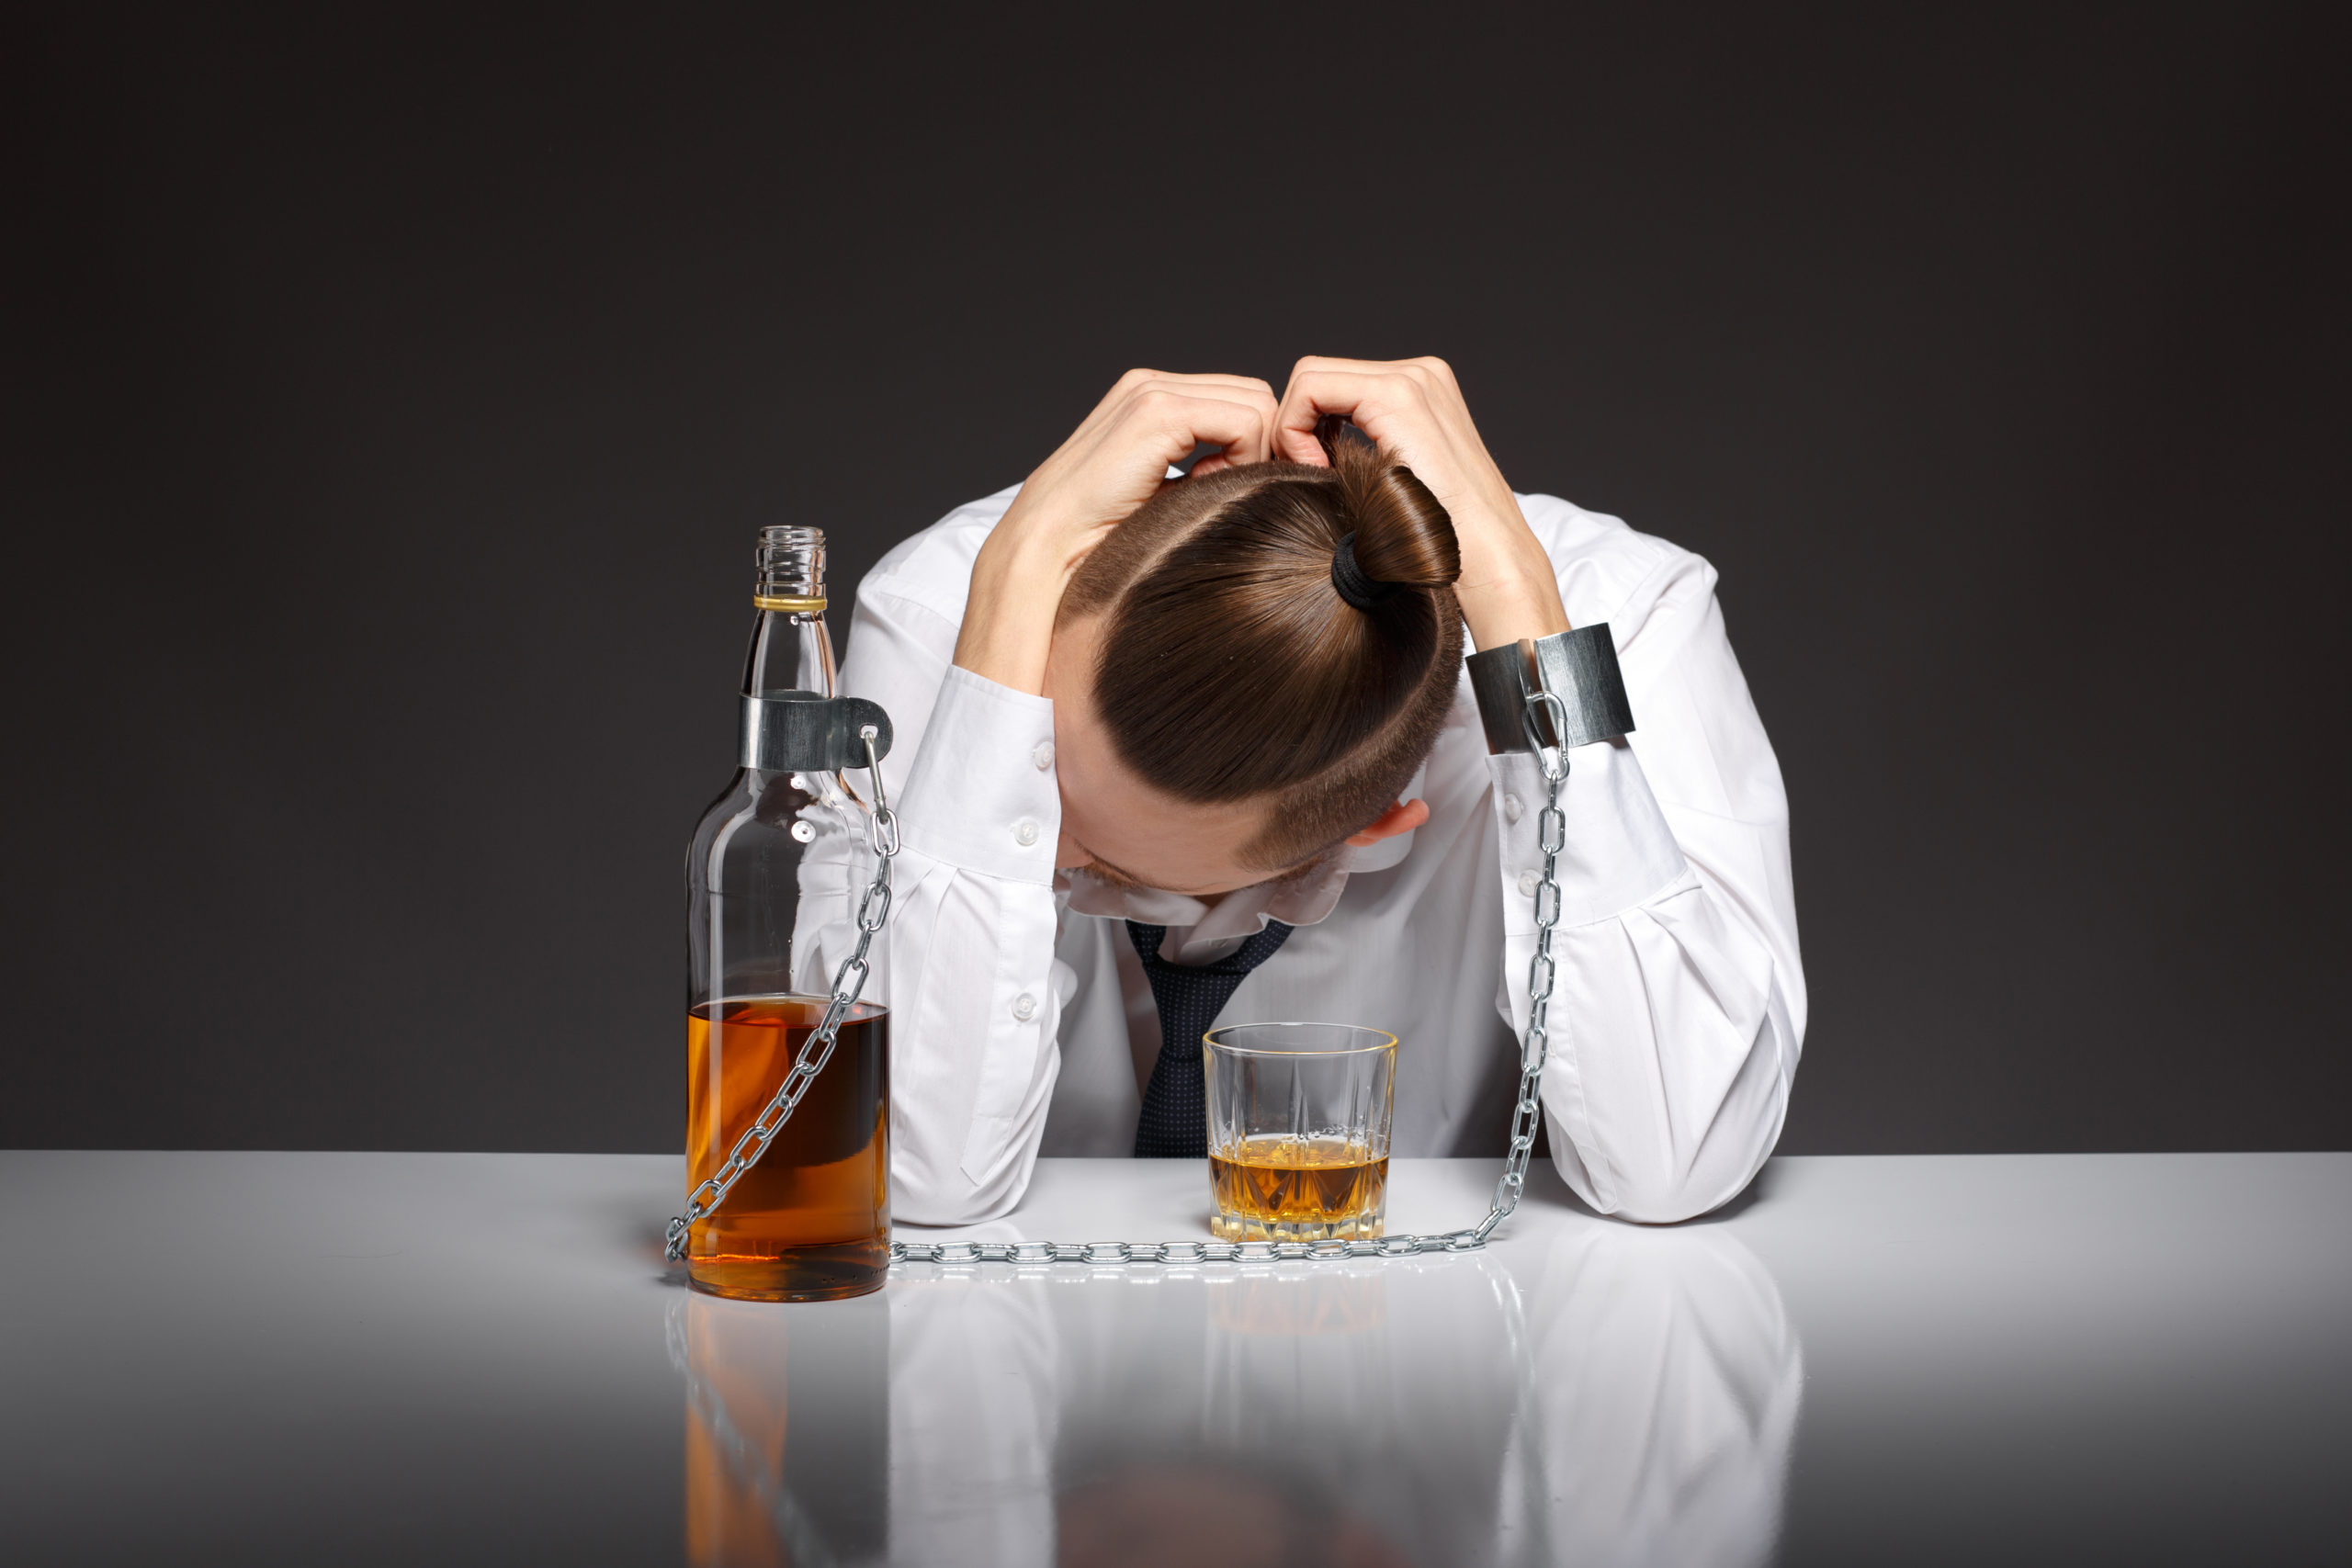 Проблема алкогольной зависимости в обществе: источники, последствия и пути решения